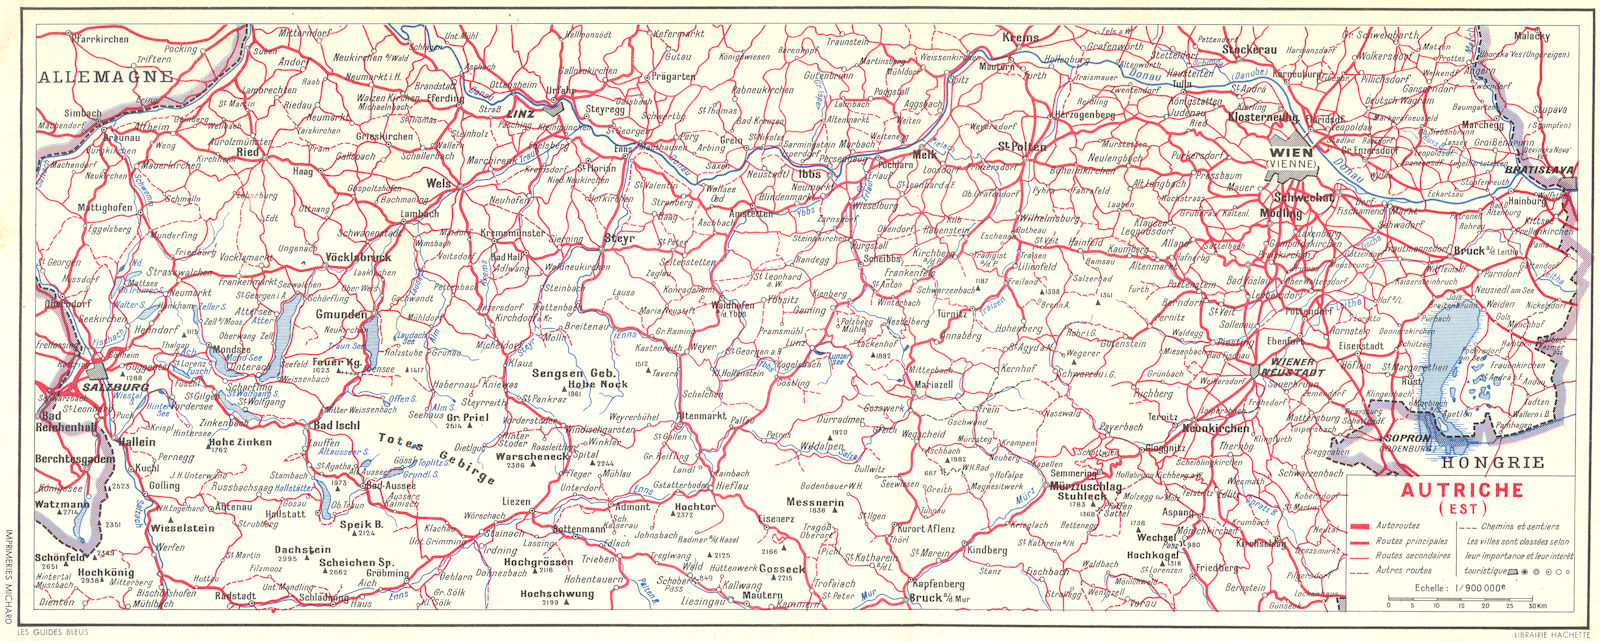 AUSTRIA. Autriche(Est) 1954 old vintage map plan chart